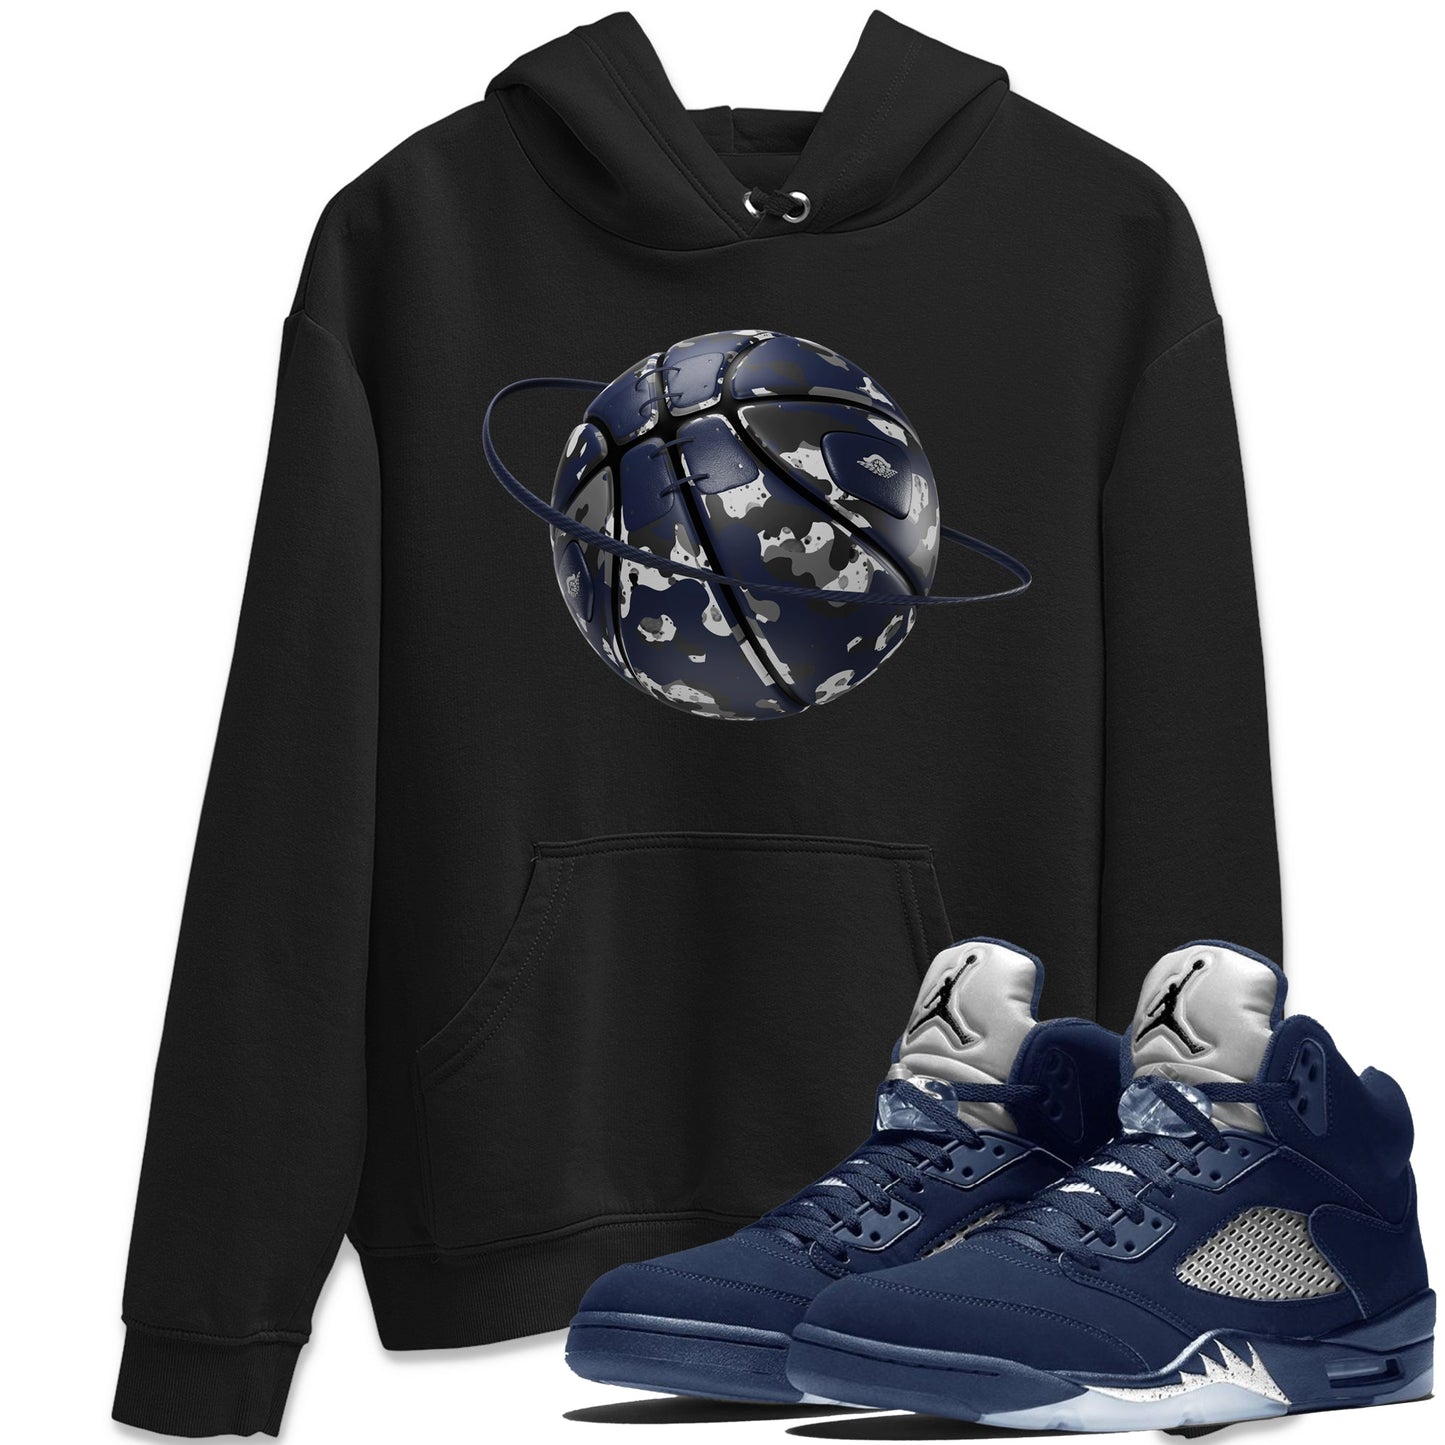 Air Jordan 5 Georgetown shirt to match jordans Camo Basketball Planet Streetwear Sneaker Shirt AJ5 Georgetown Drip Gear Zone Sneaker Matching Clothing Unisex Black 1 T-Shirt